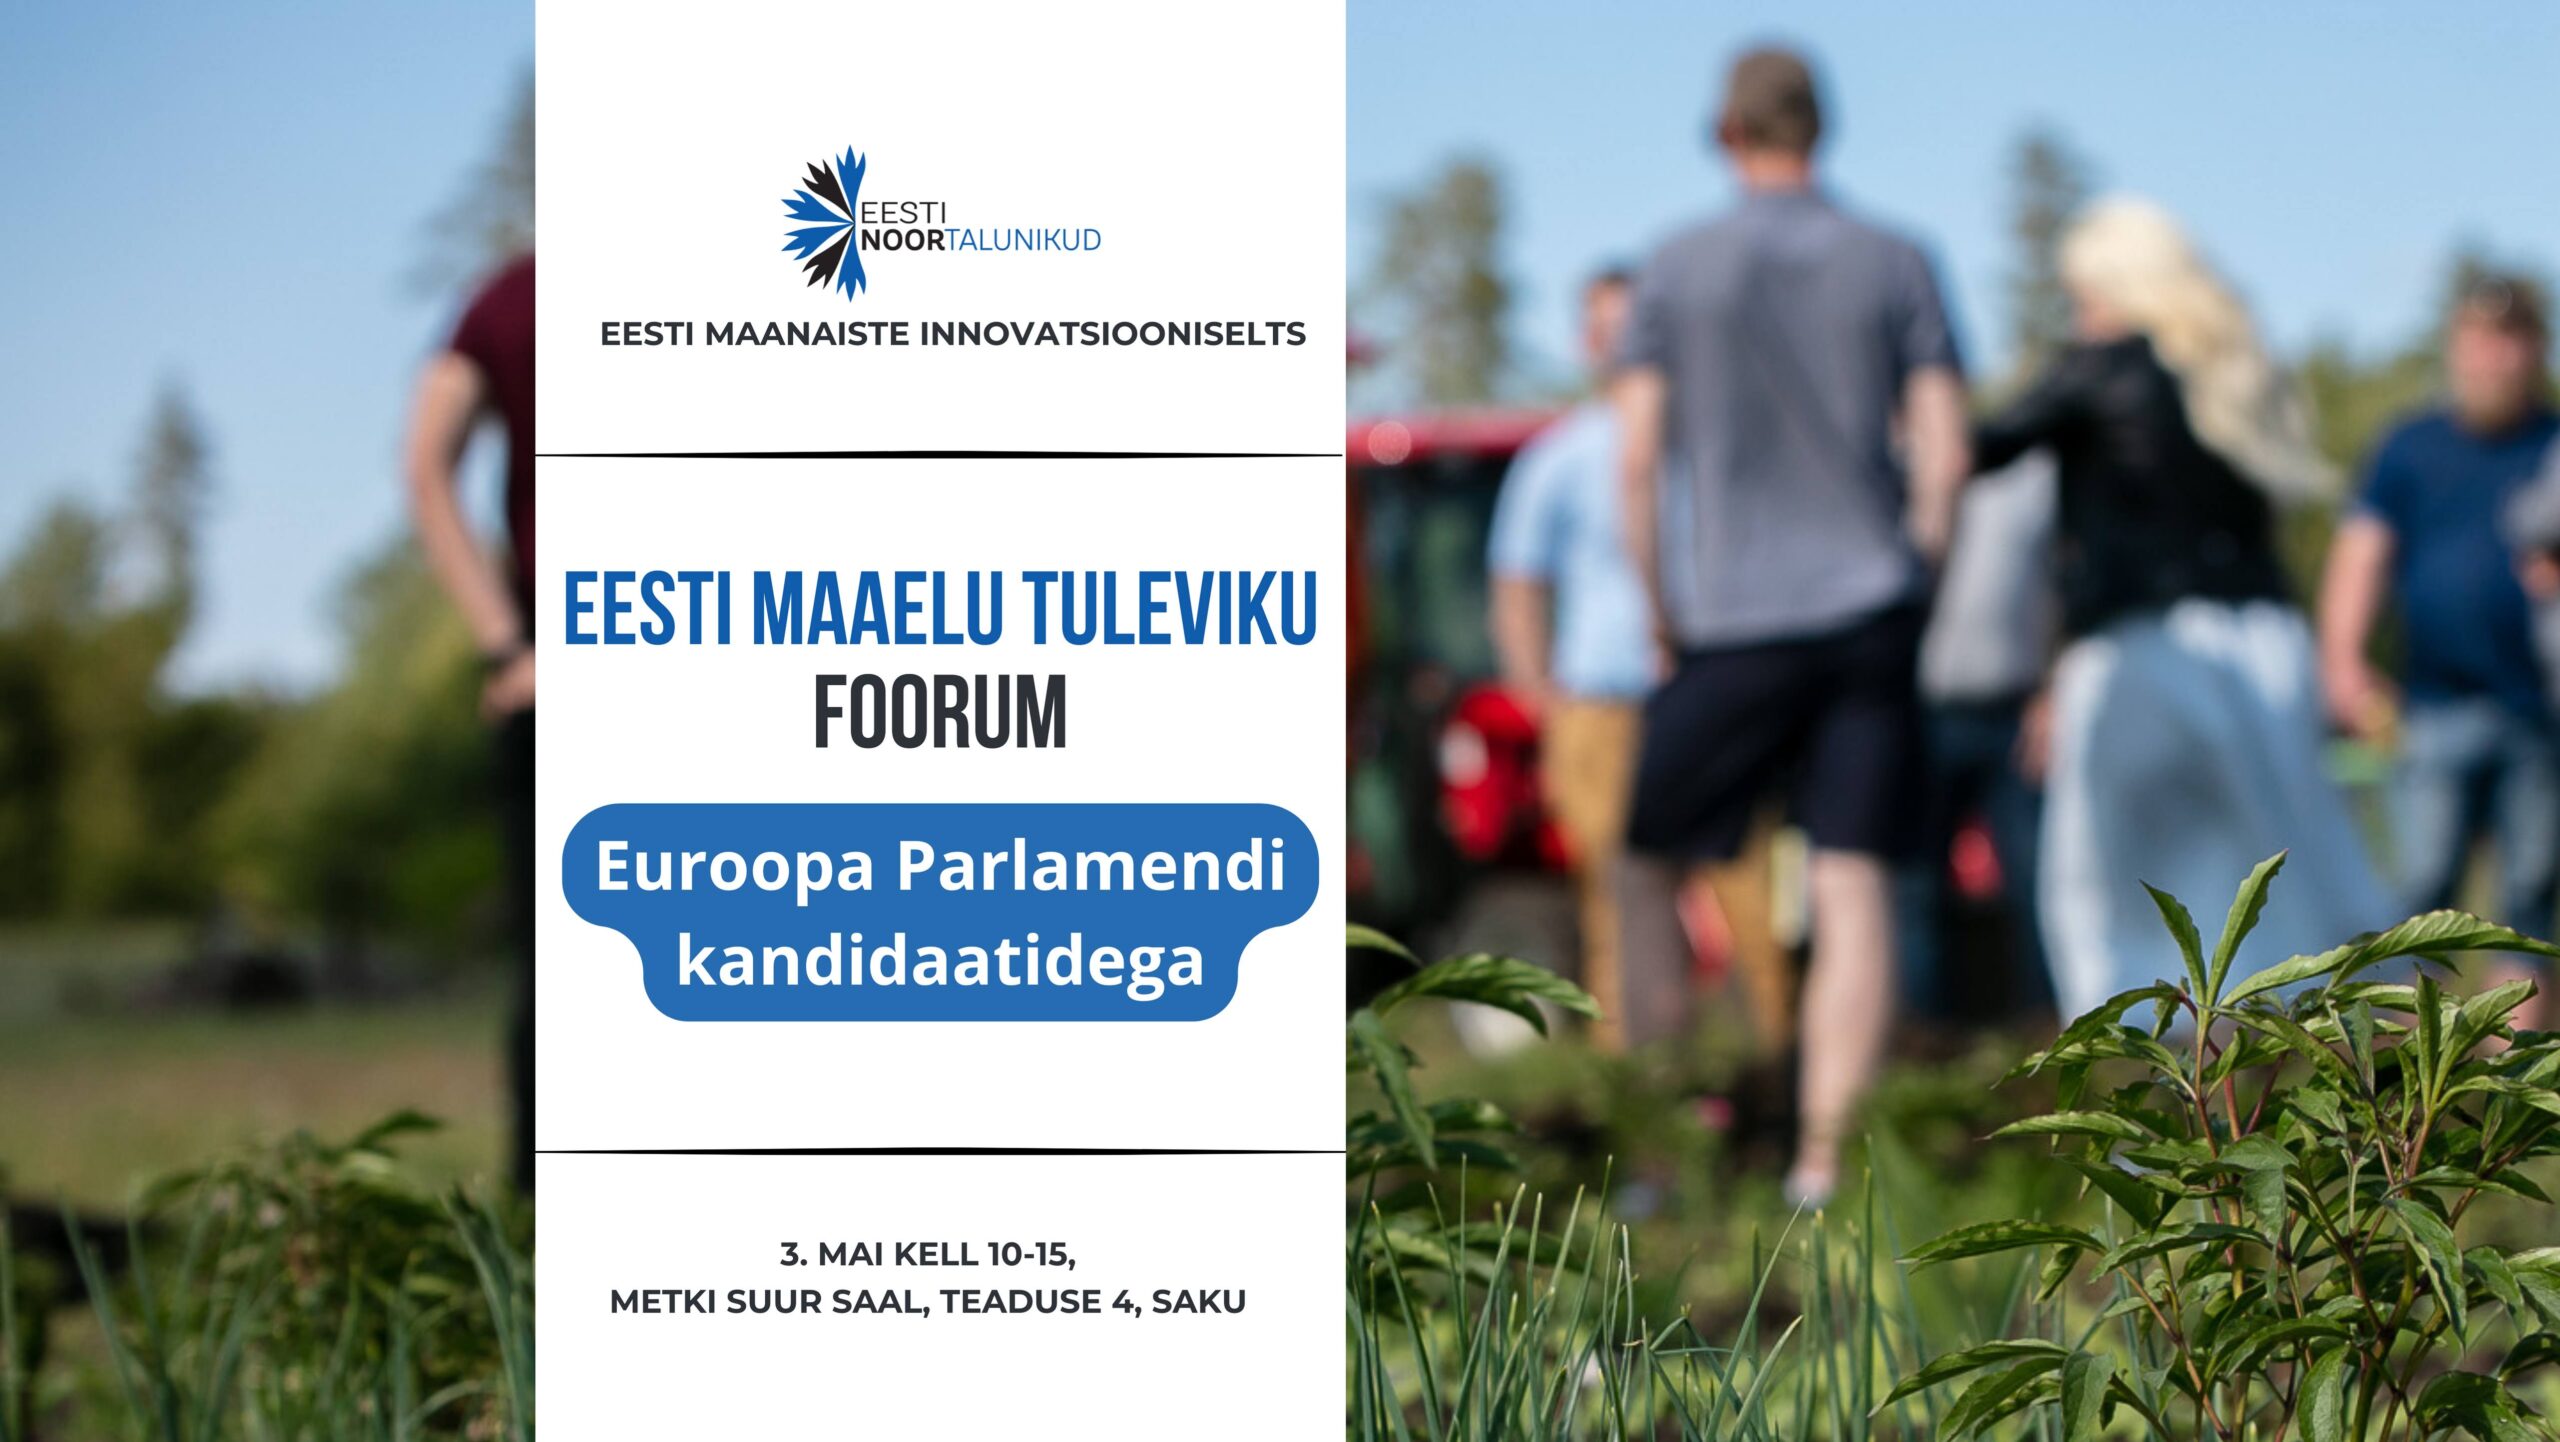 Eesti maaelu tuleviku foorum Euroopa Parlamendi kandidaatidega